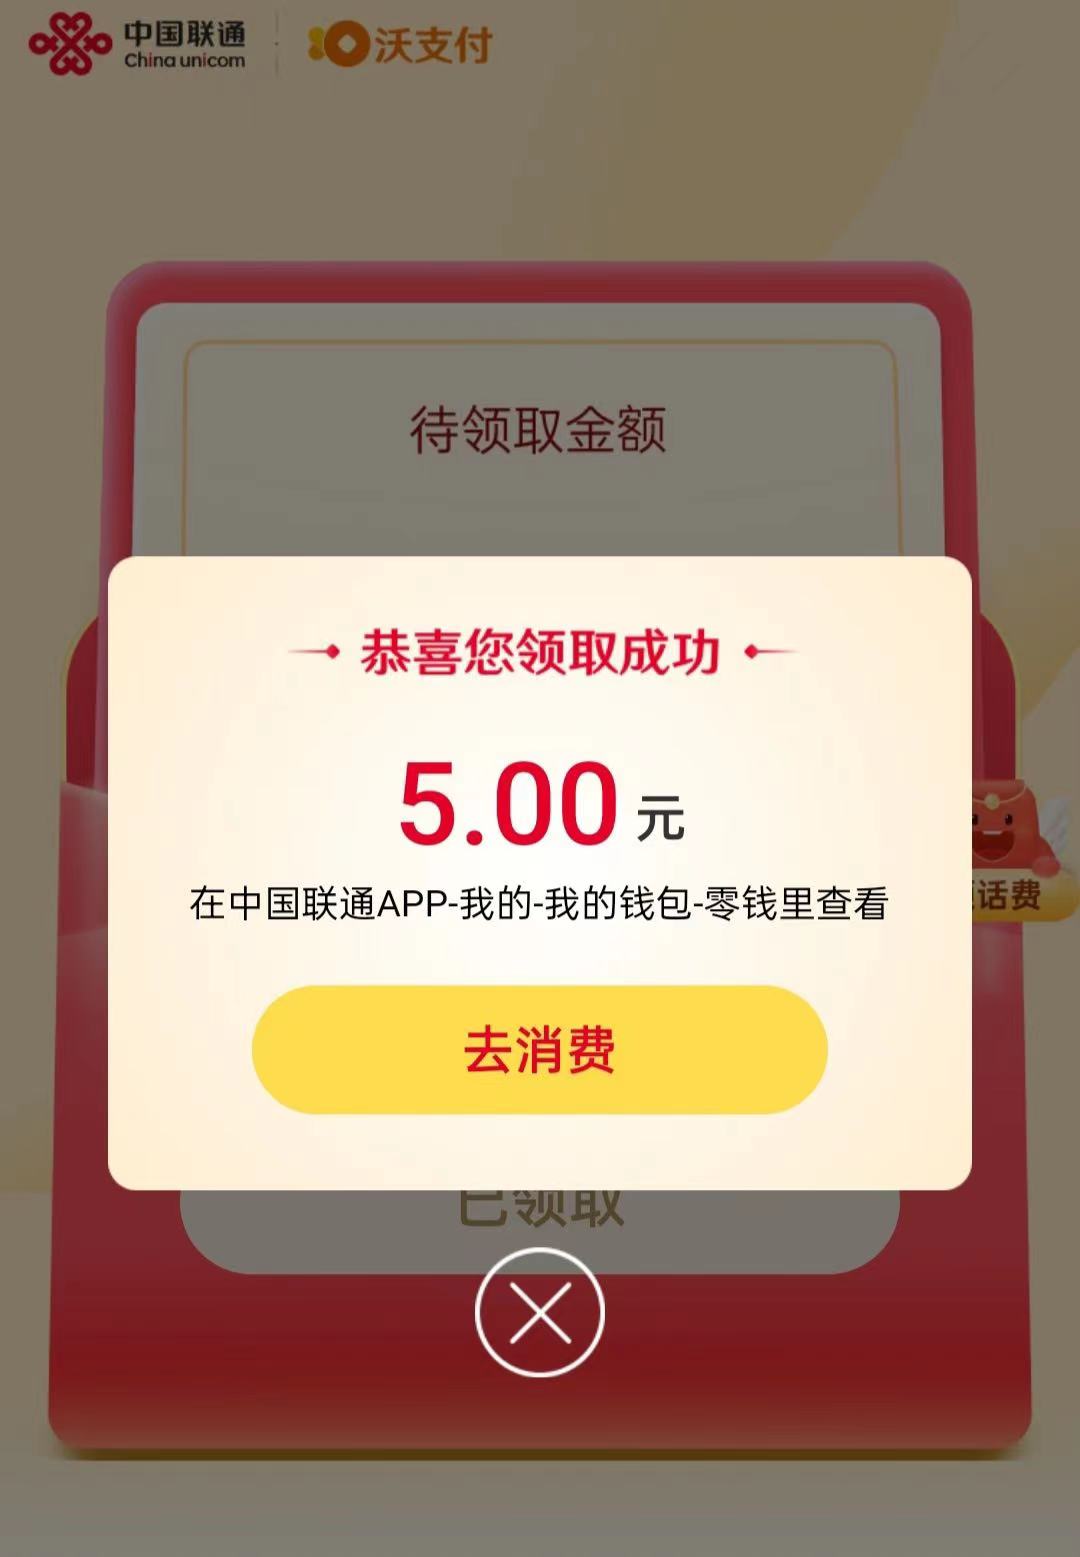 中国联通app首页右上角签到邀请好友助力活动